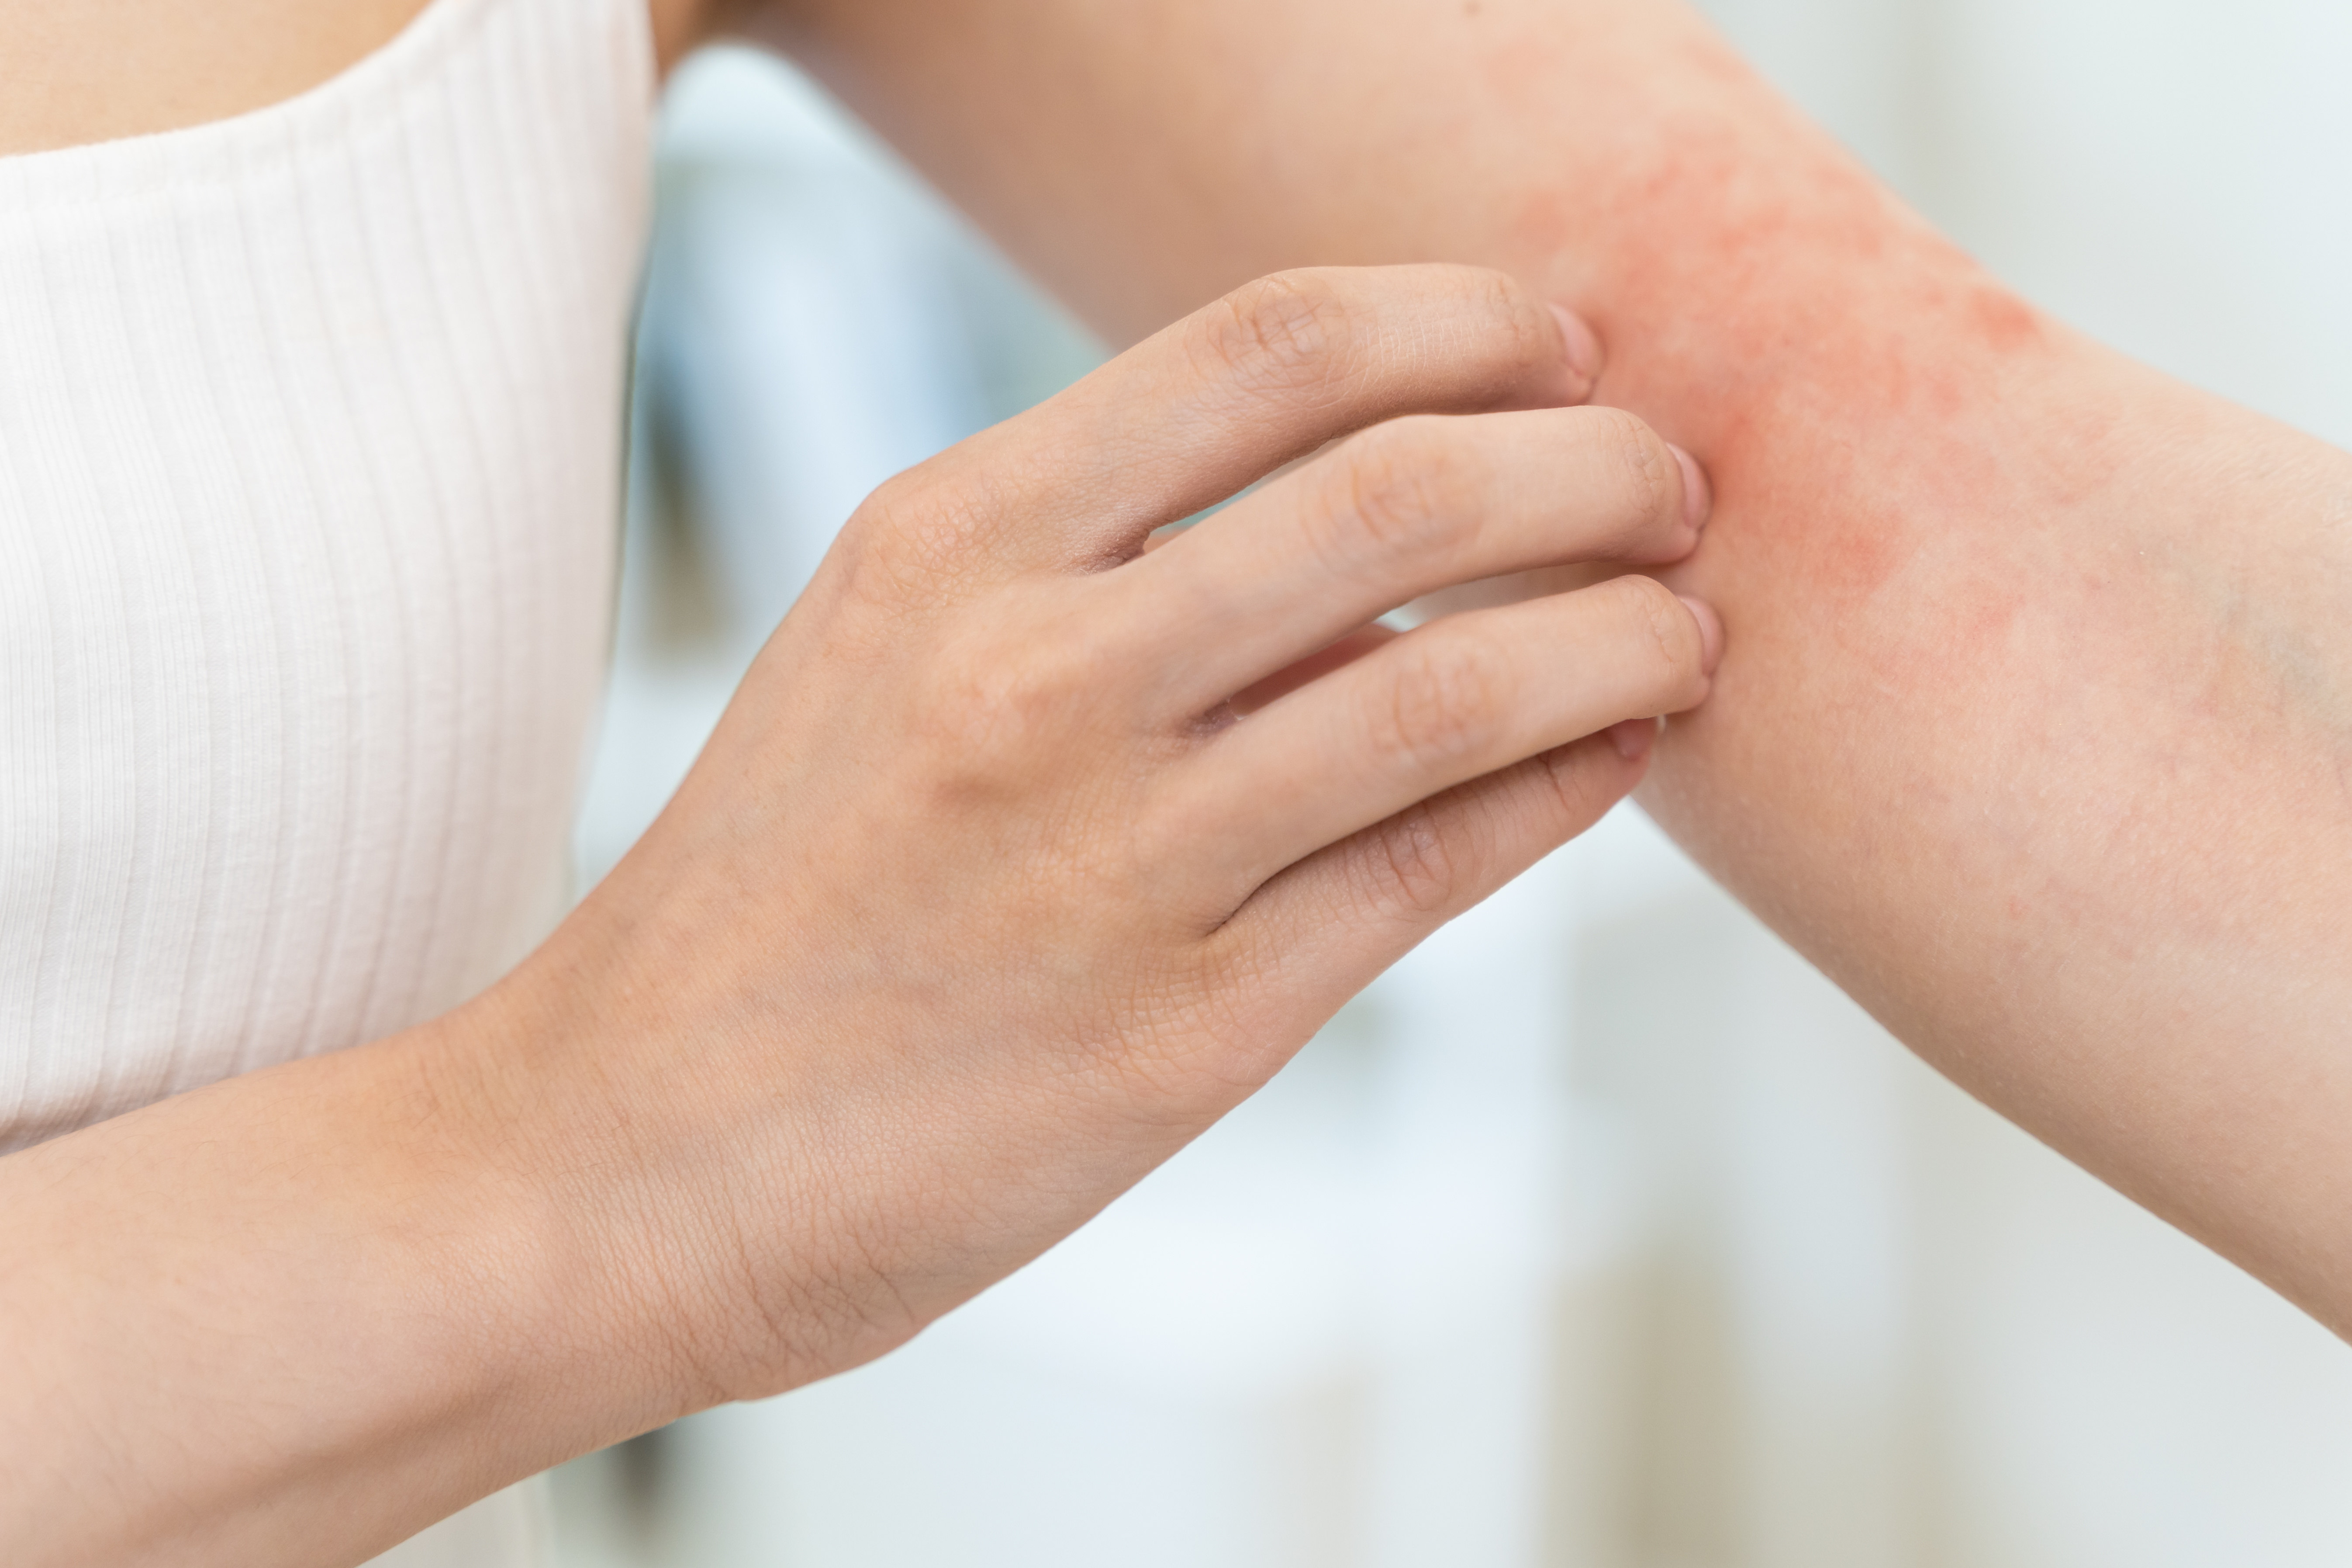 Reconnaître une réaction allergique cutanée est essentiel pour prendre les mesures appropriées et soulager les symptômes. © Pormezz, Adobe Stock